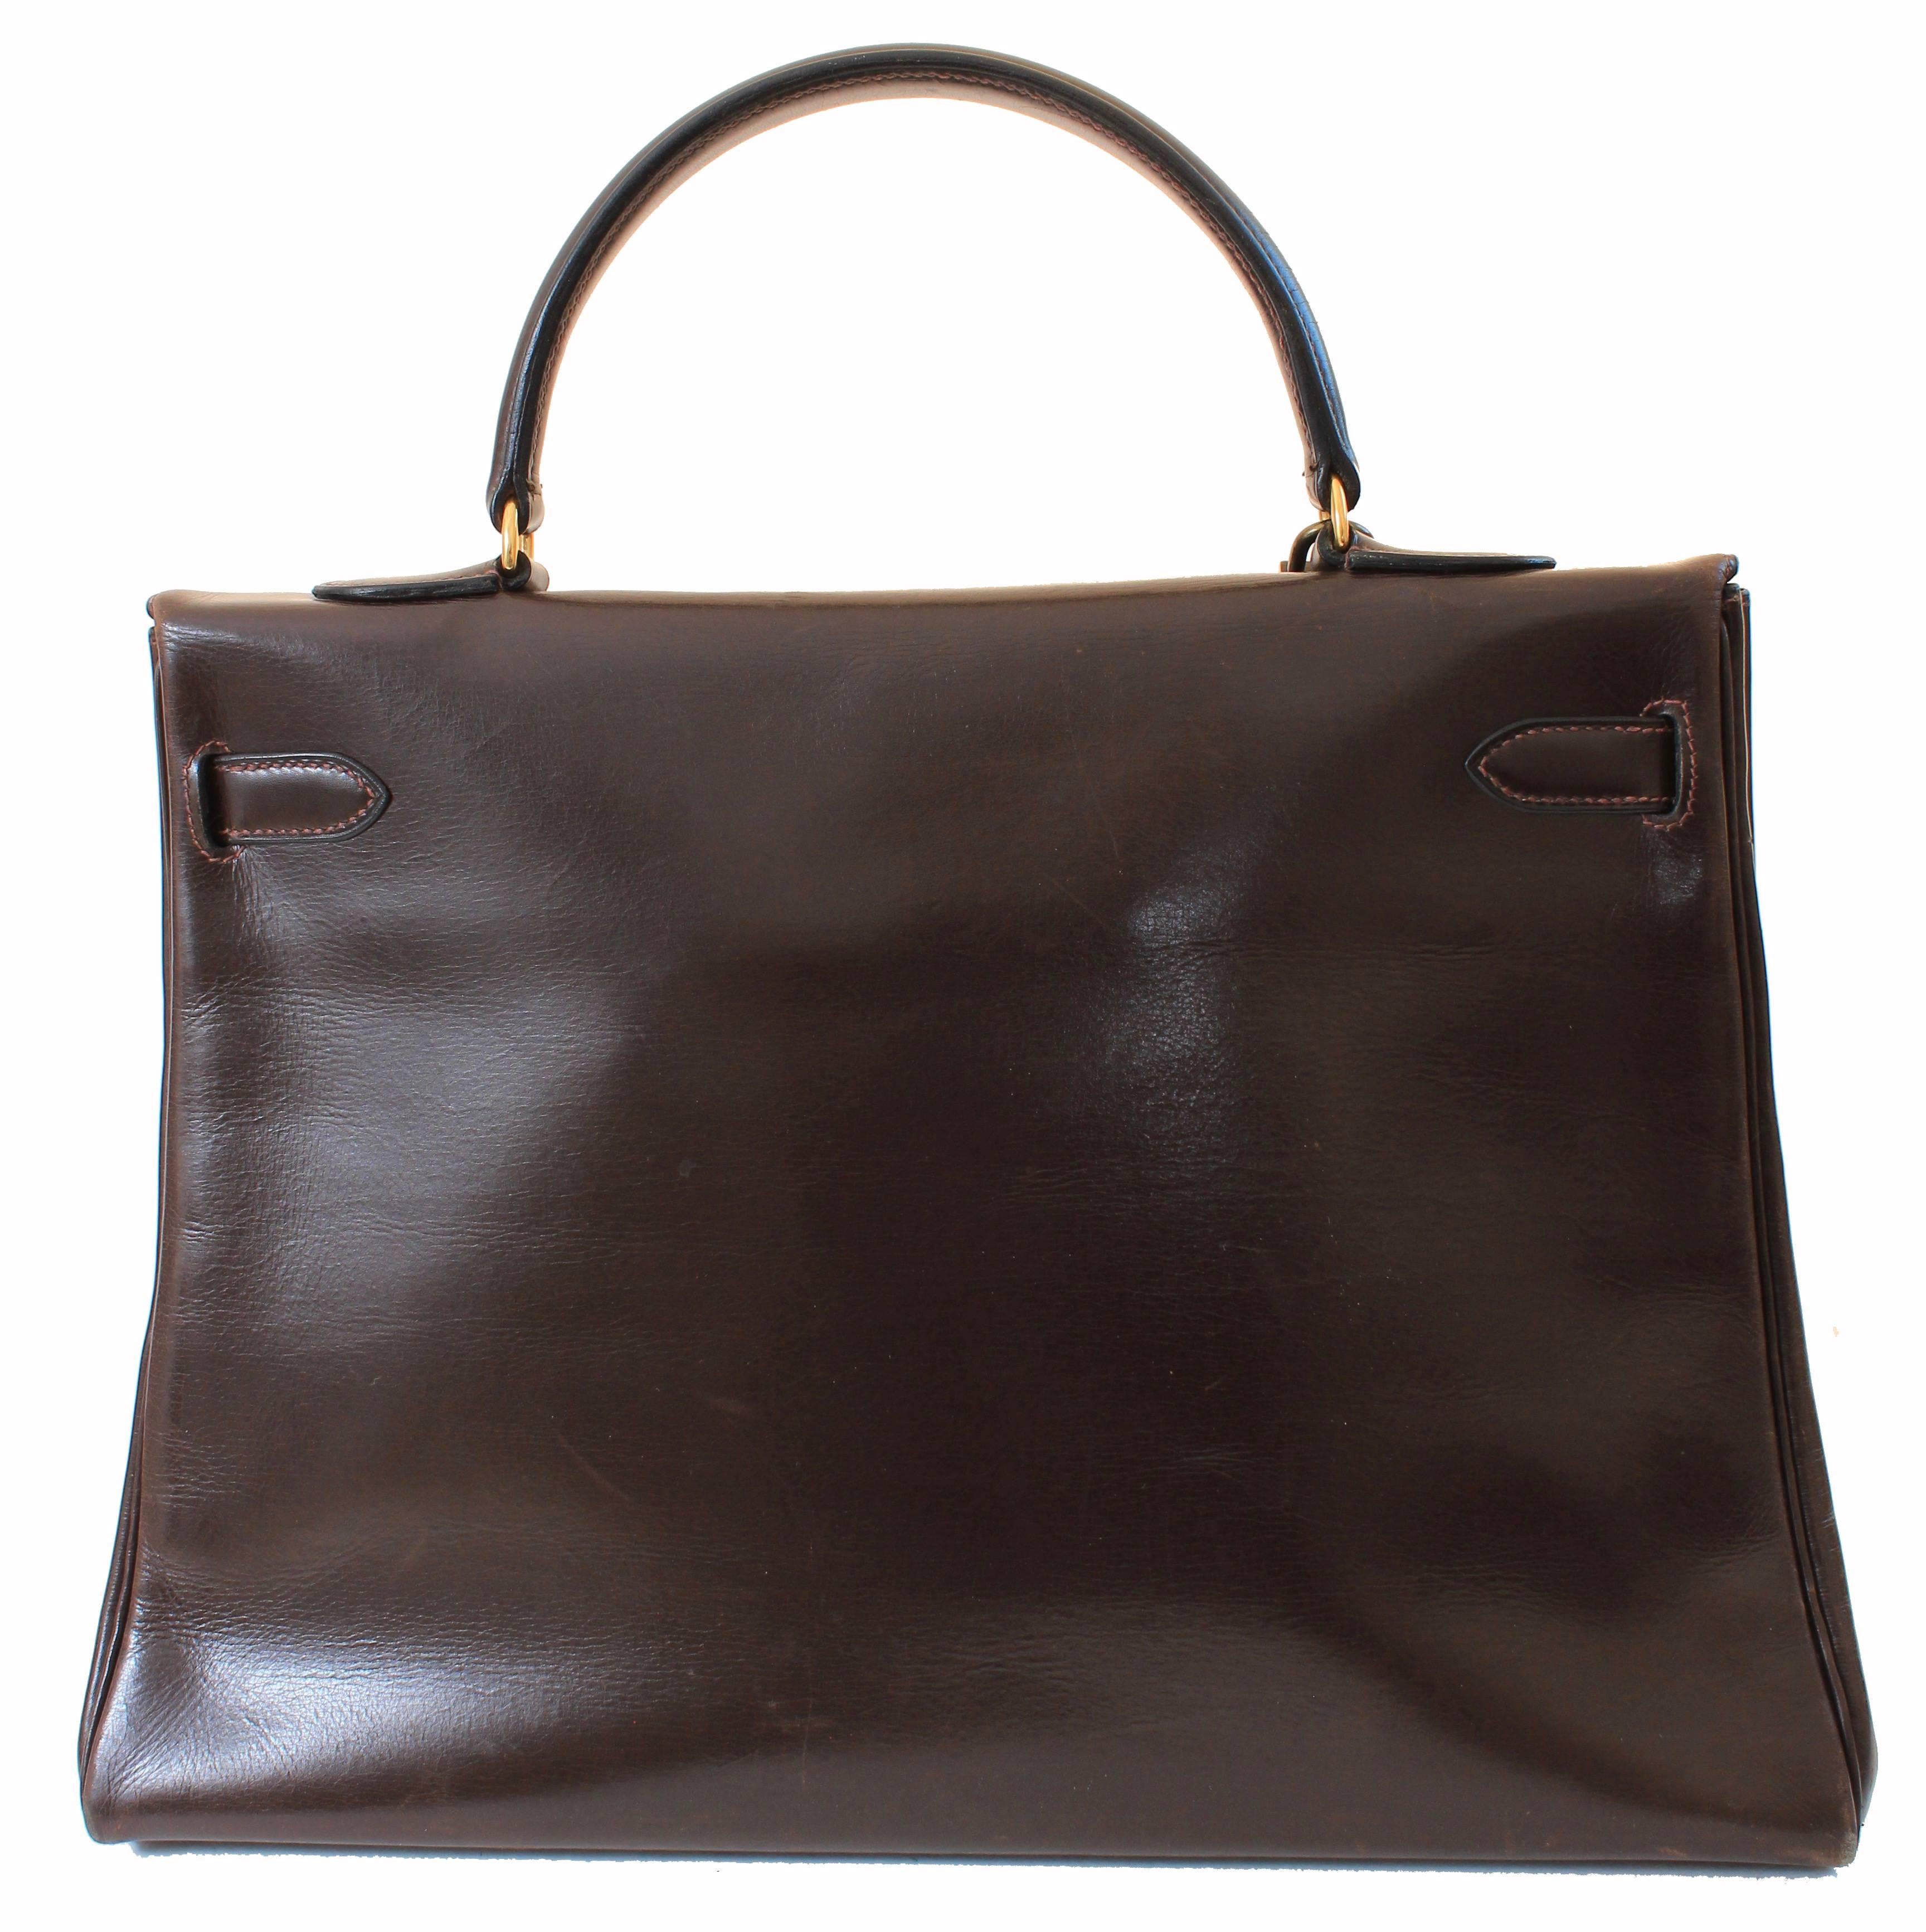 Vintage Hermes Kelly Bag Retourne Brown Box Leather 35cm Top Handle Bag 1945  For Sale 4